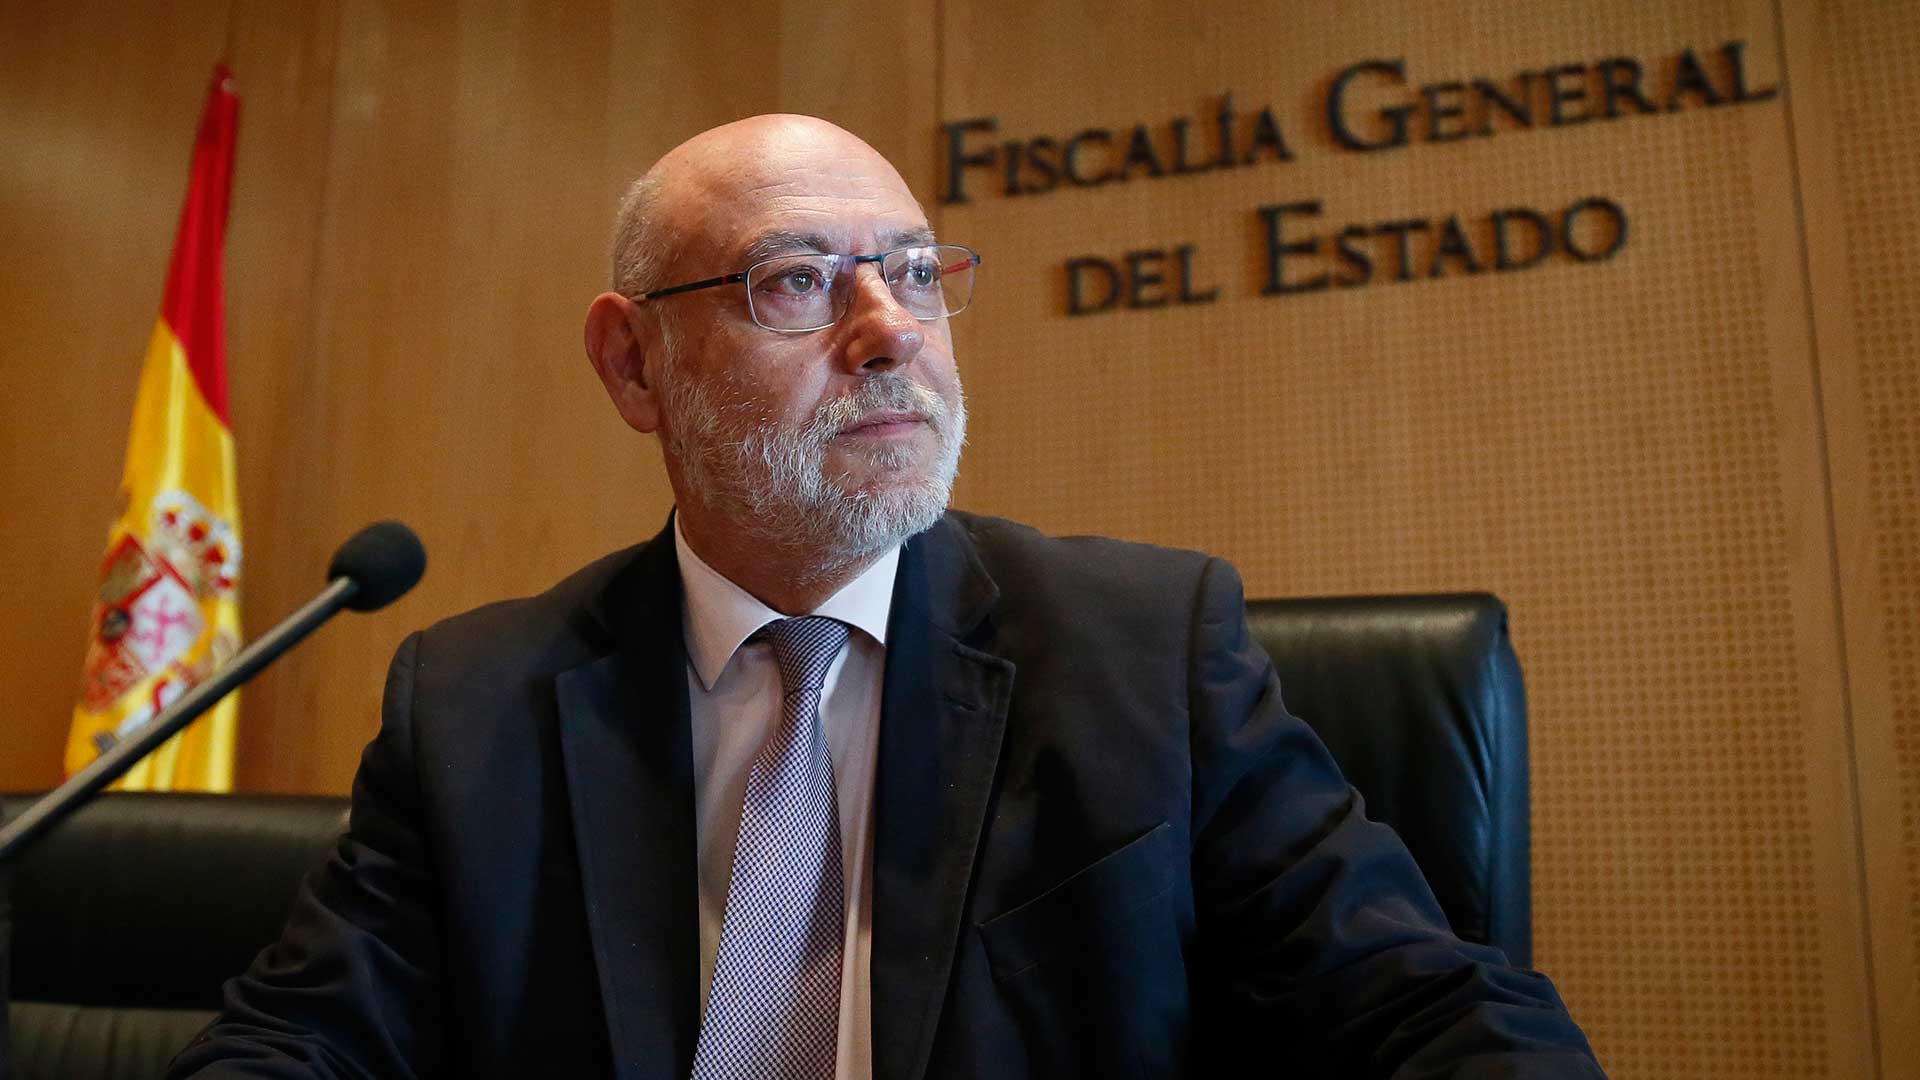 Muere el fiscal general del Estado, José Manuel Maza